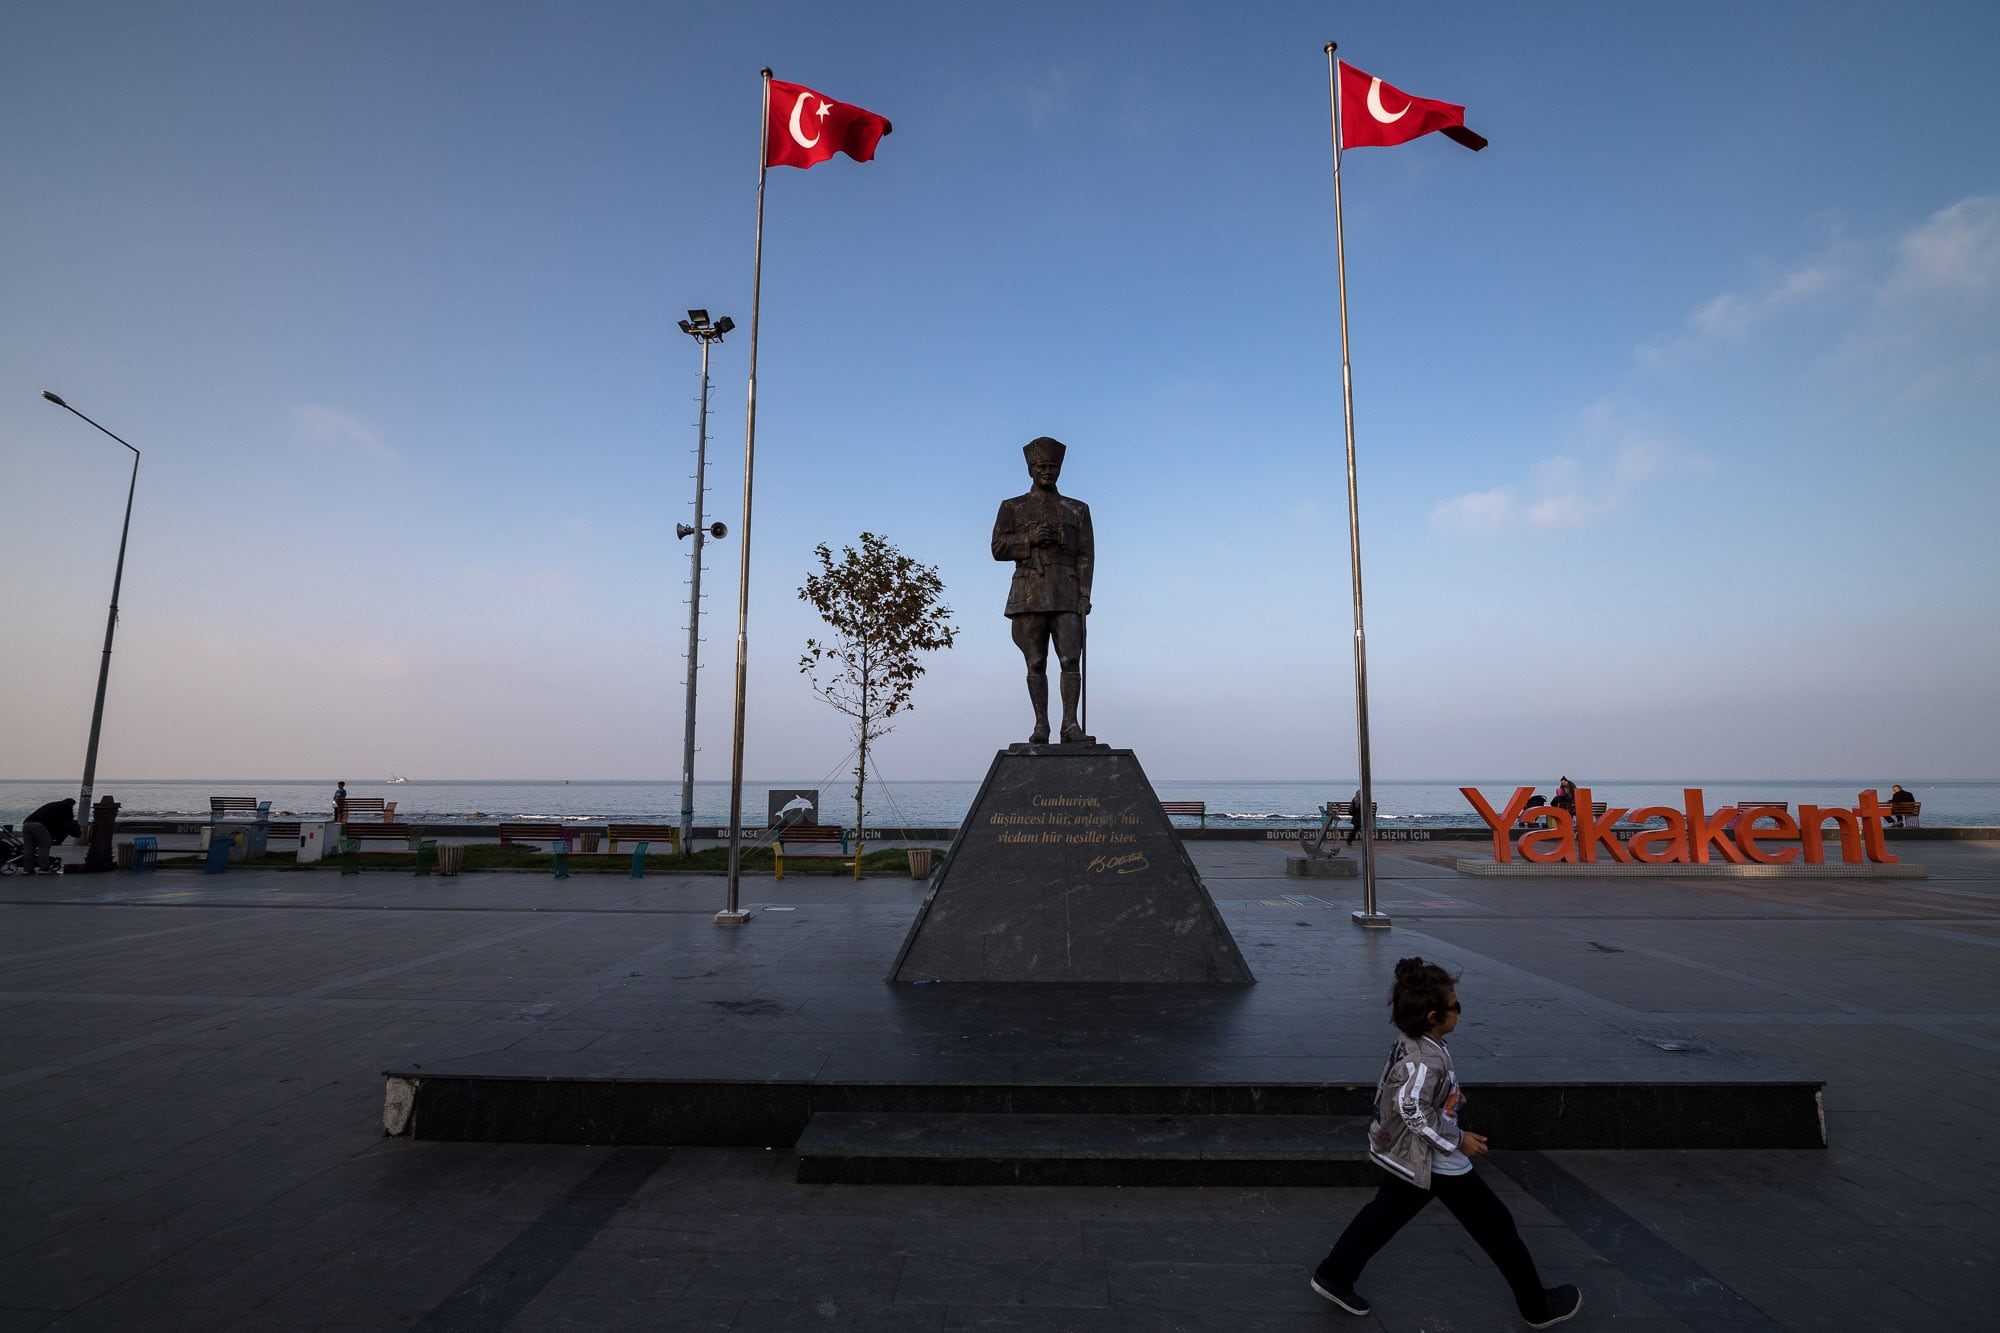 Atatürk statue in Yakakent